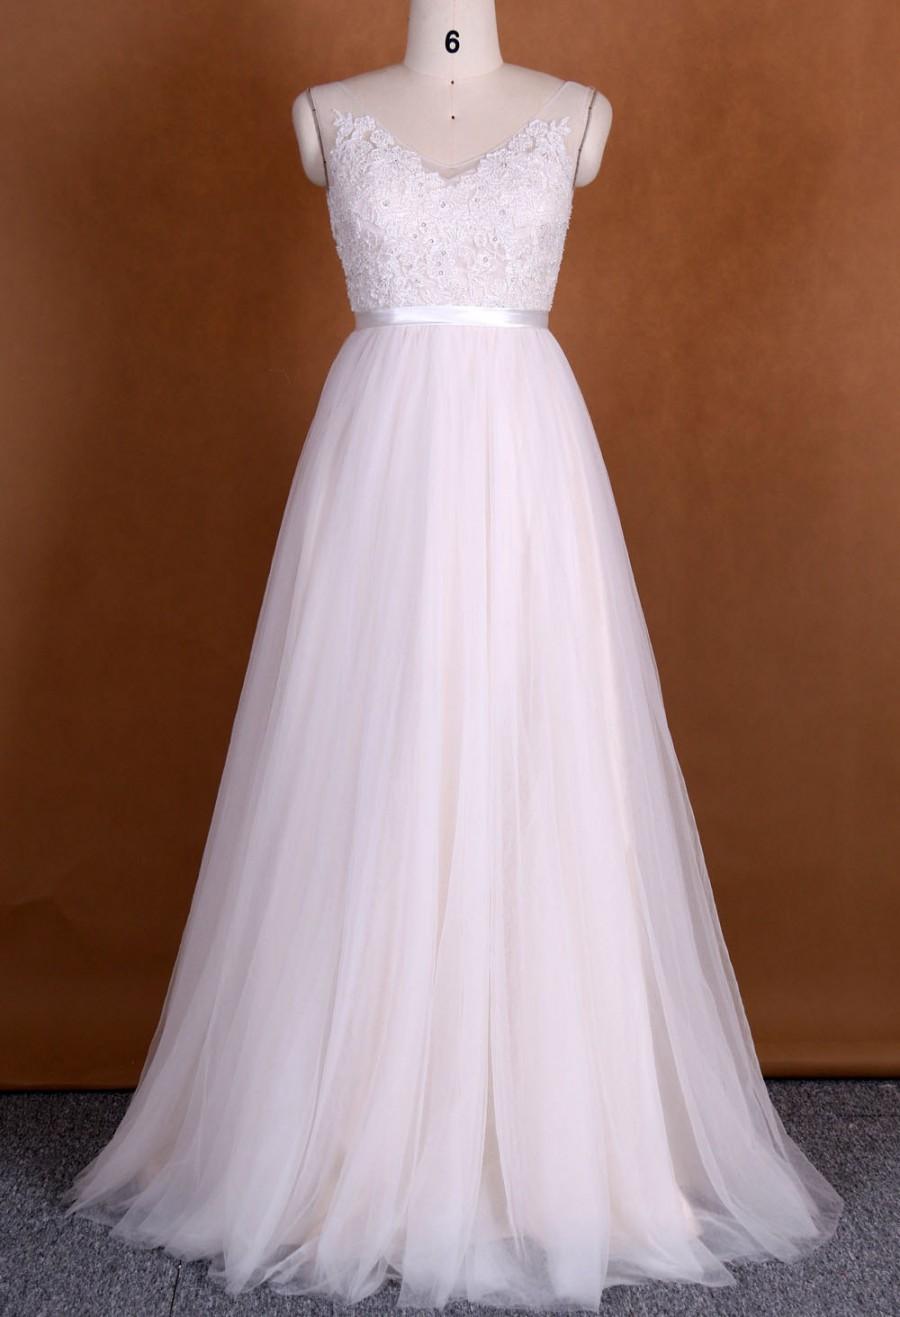 زفاف - V Neckline evening dress, beading lace appliques, low back, zipper up, floor length, Chiffion dress, bridesmaid dress, light pink dress